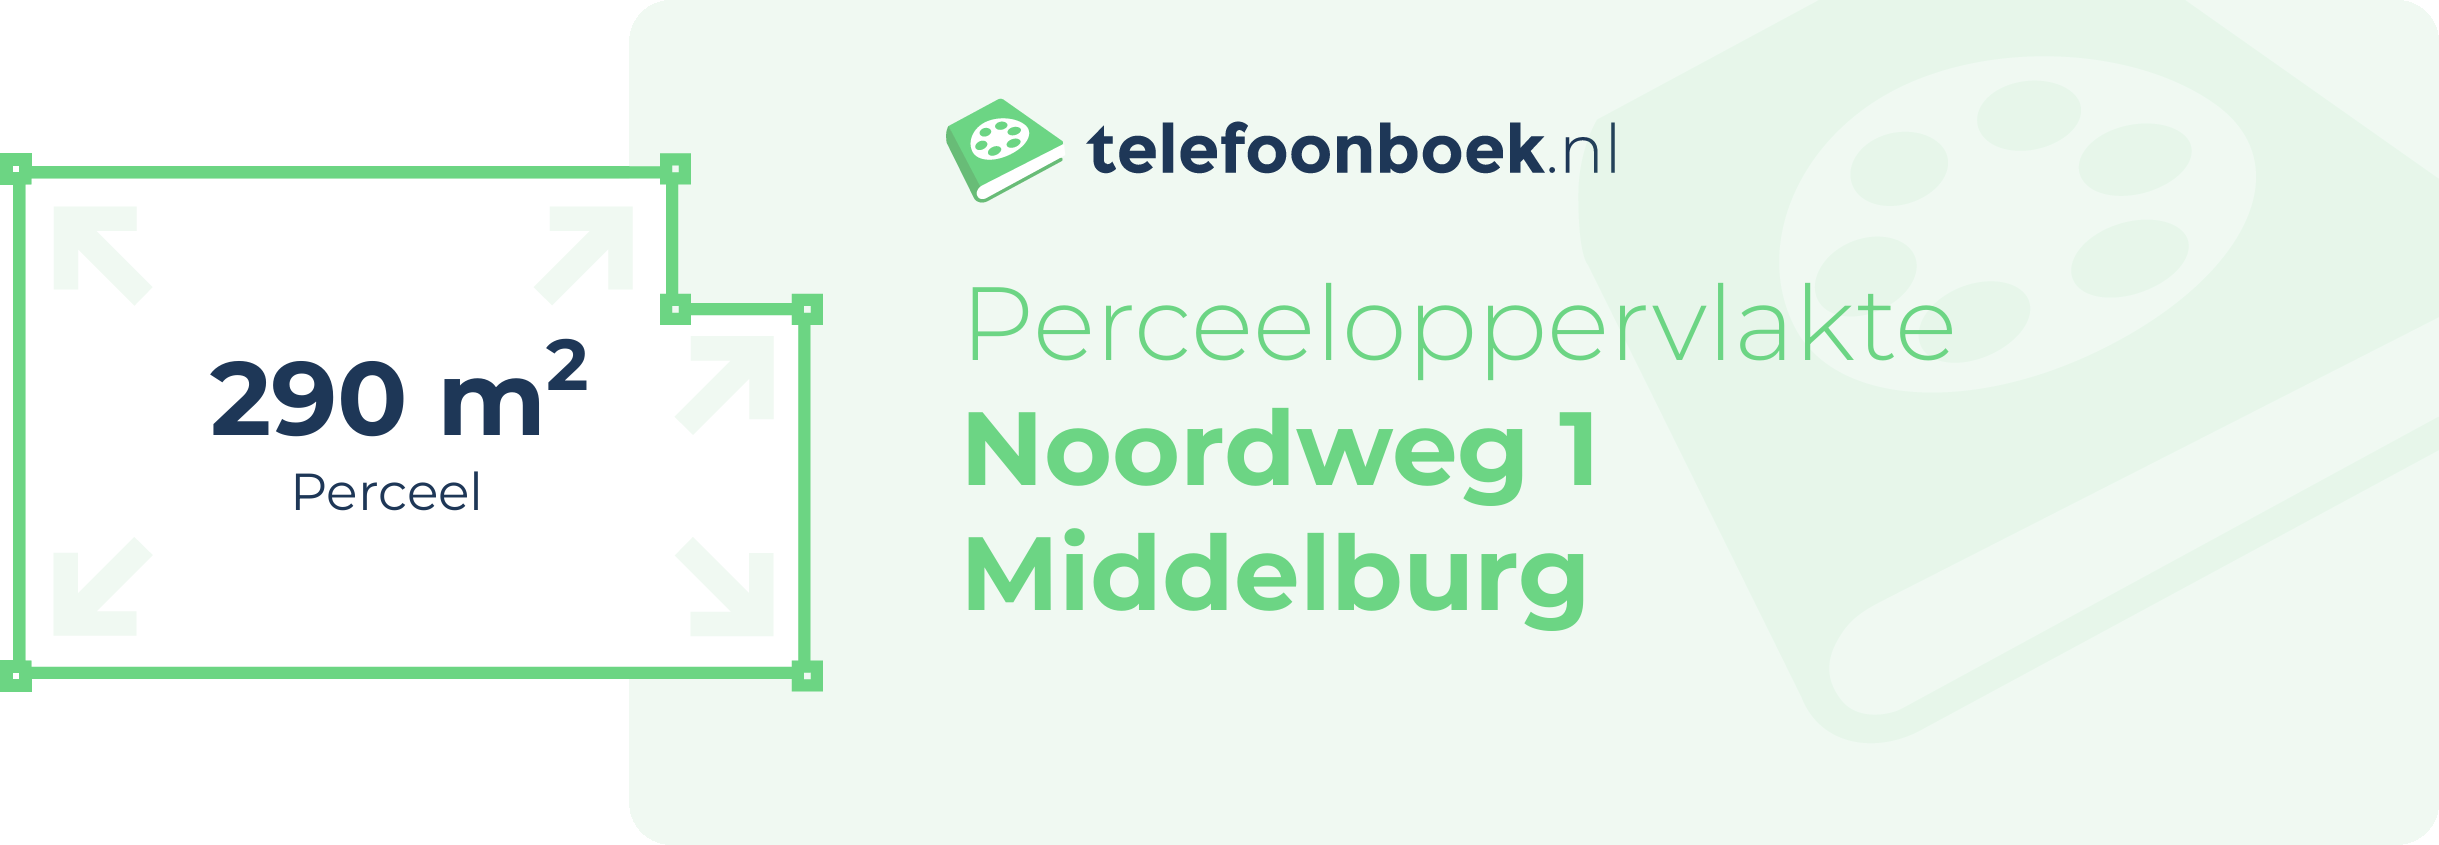 Perceeloppervlakte Noordweg 1 Middelburg